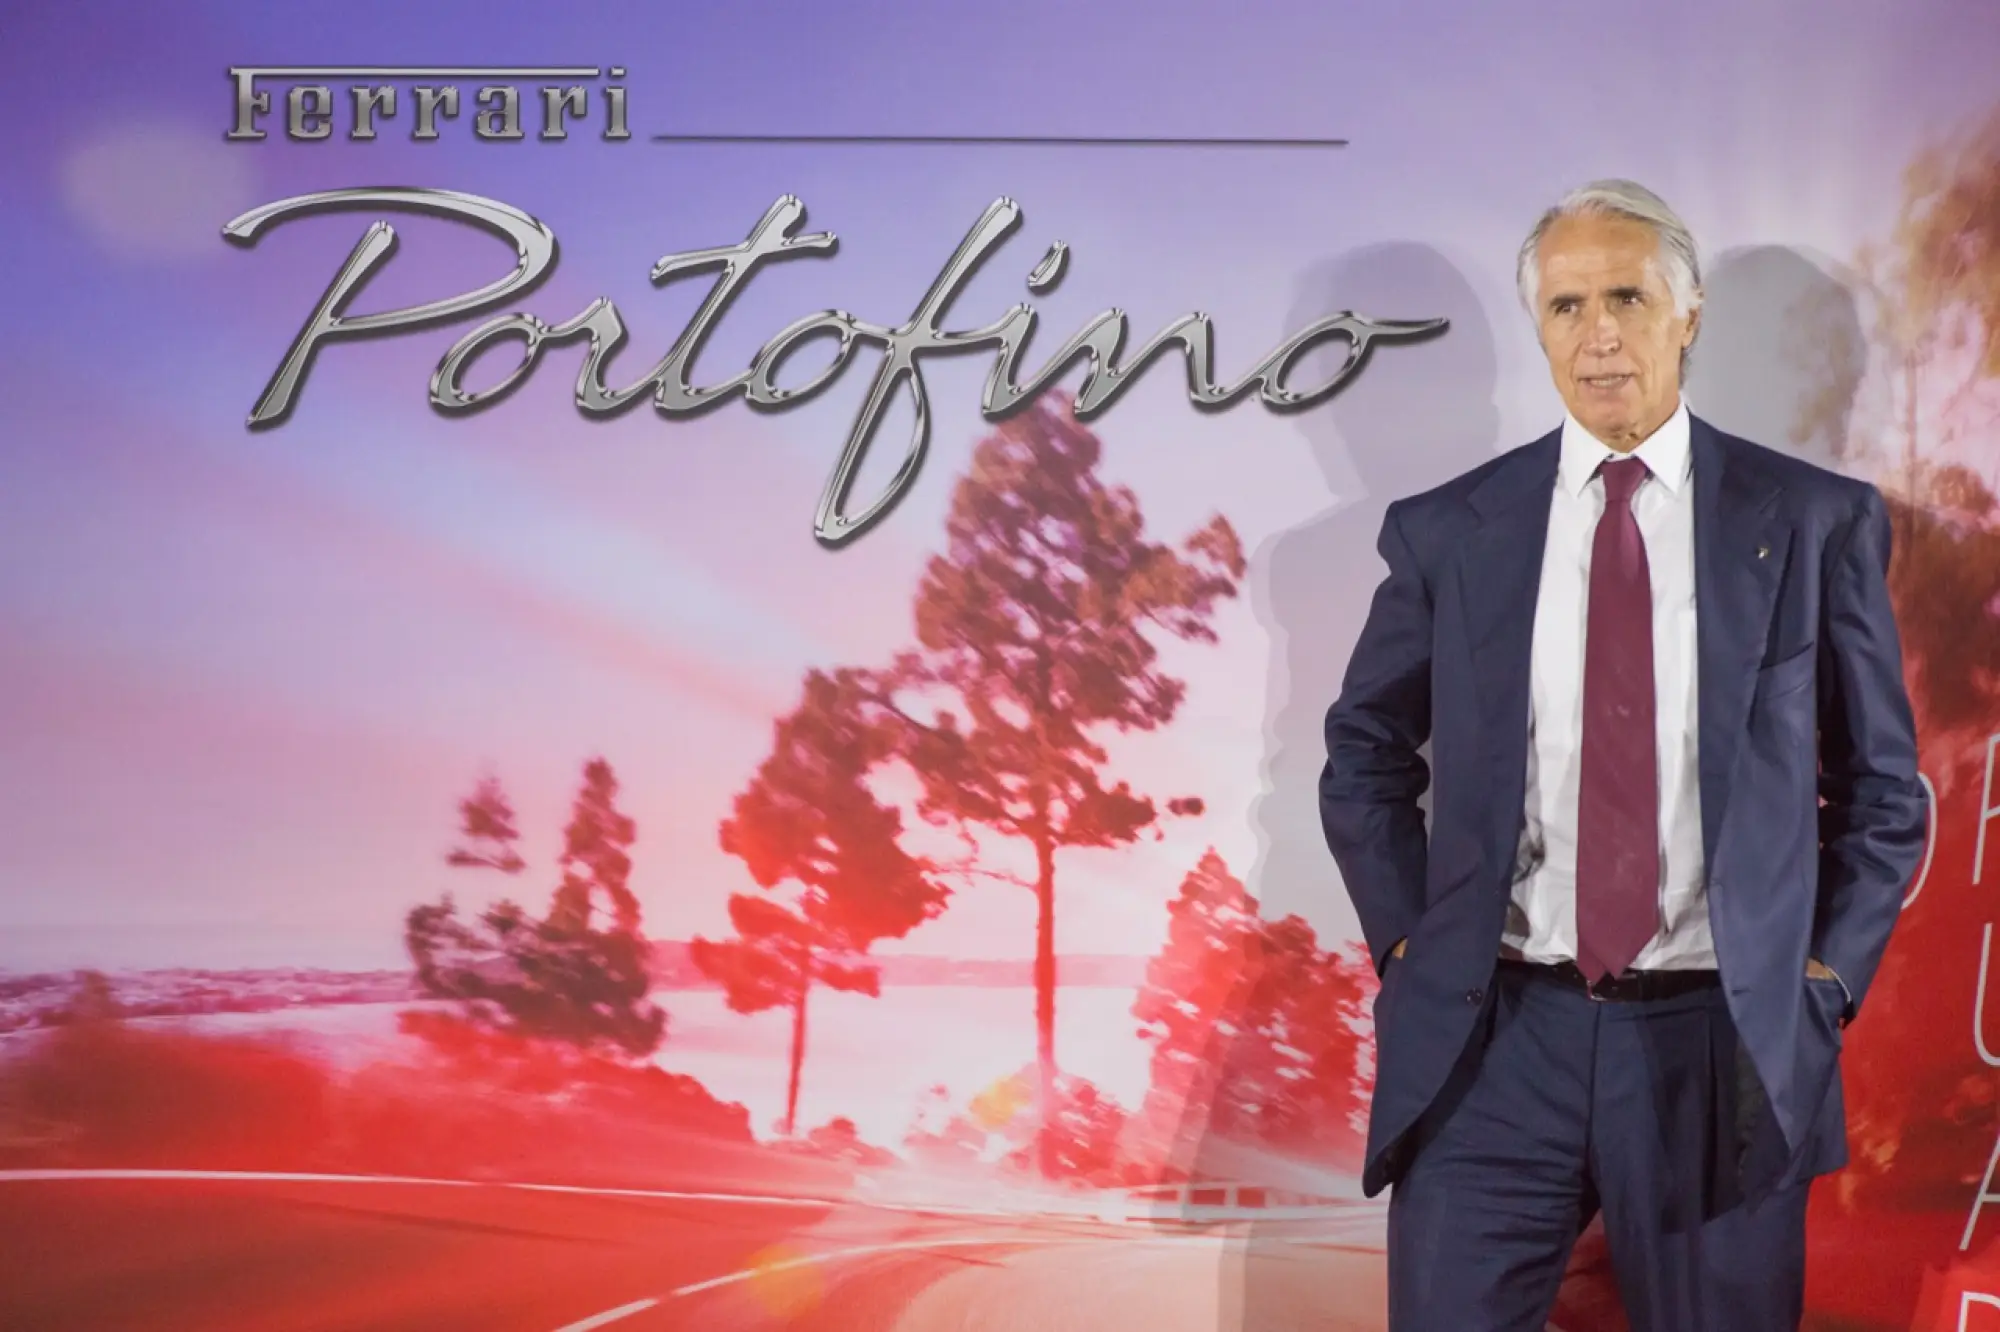 Ferrari Portofino - Premiere a Roma 2017 - 11